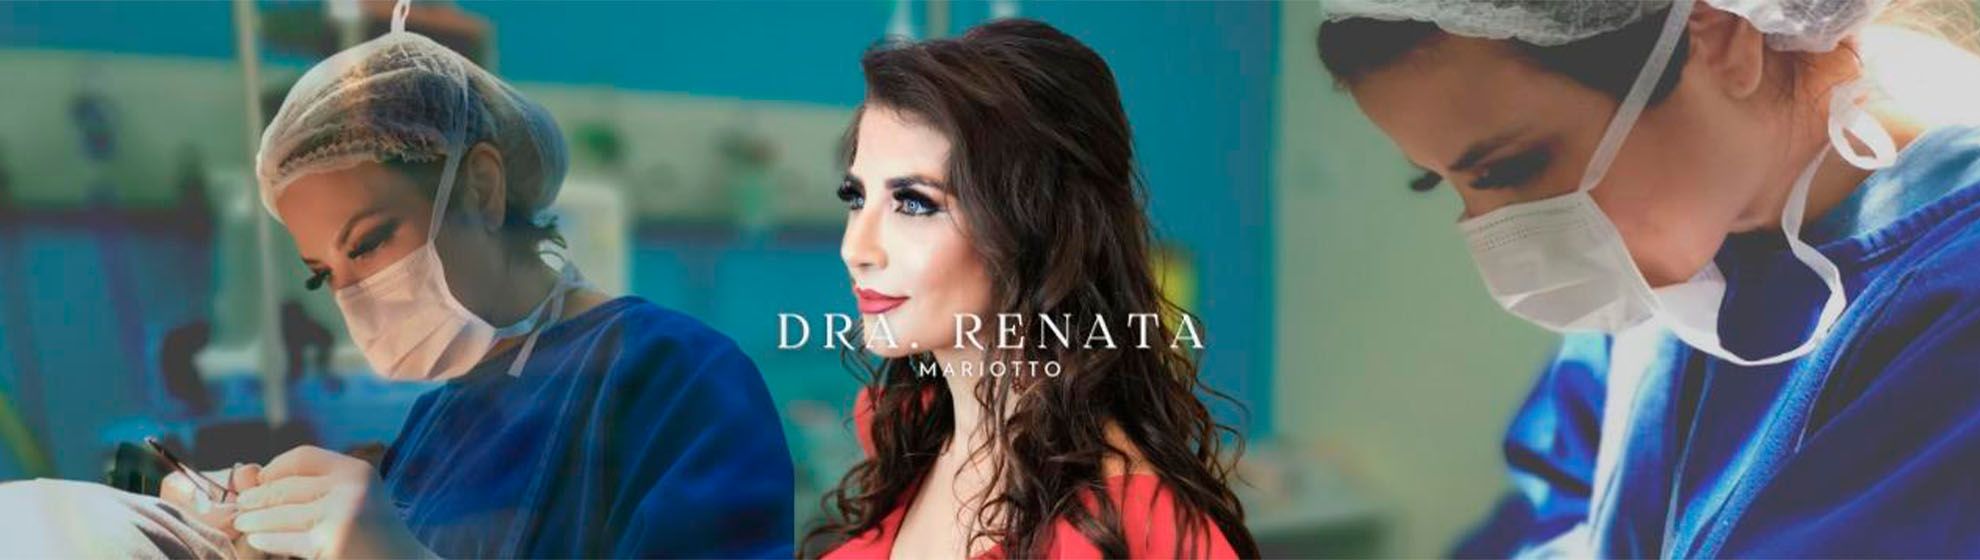 Dra. Renata Mariotto